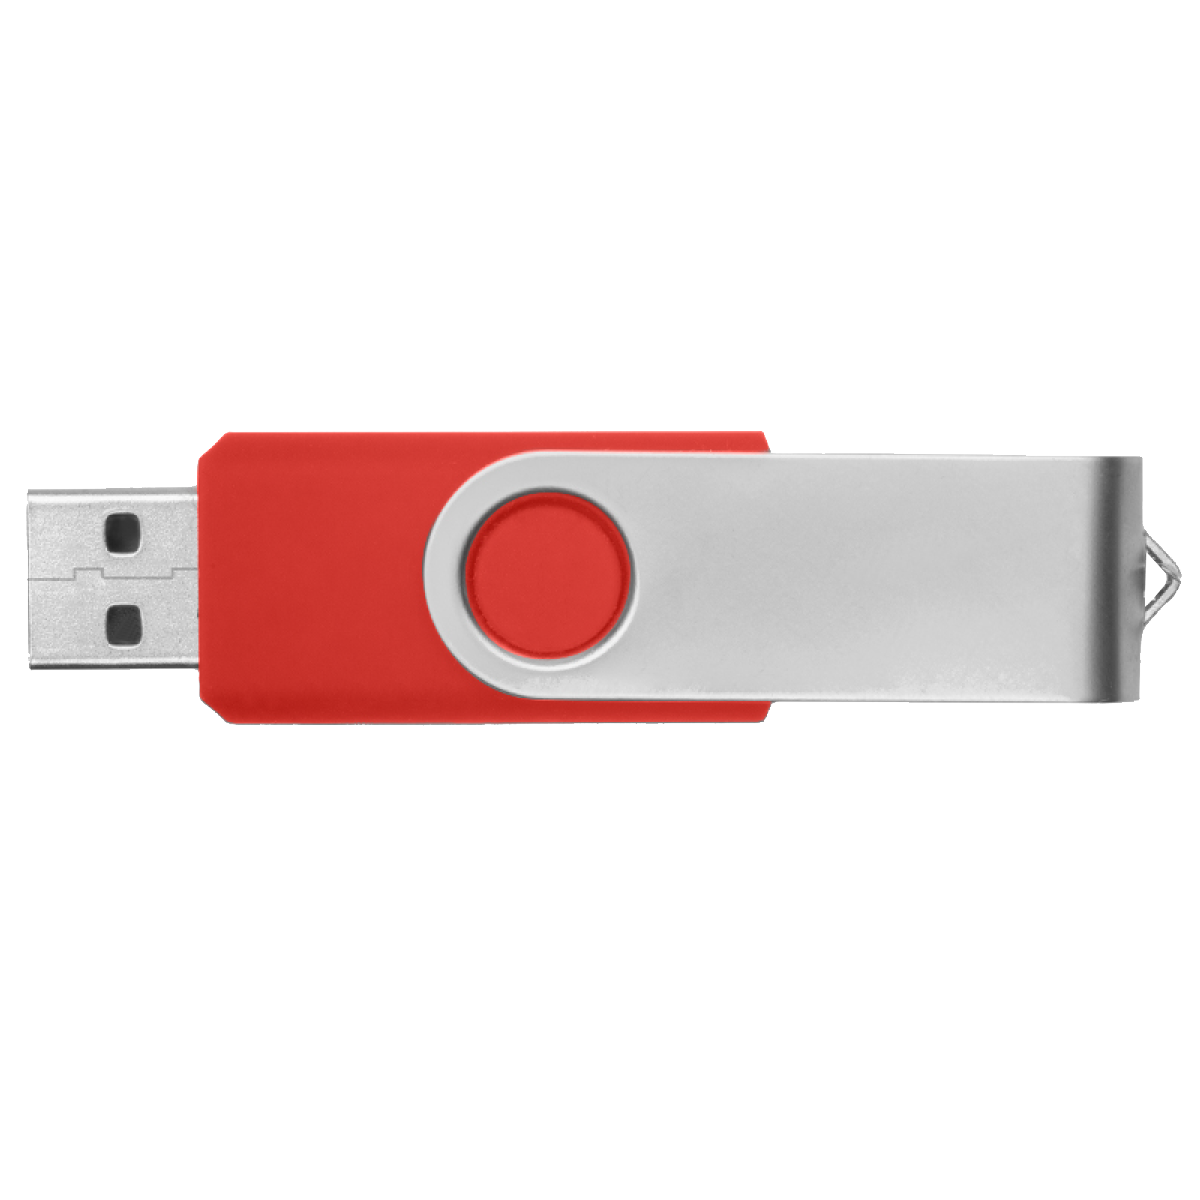 kommentator uddøde Kæledyr USB-Stick, 8GB | Accessoires | HS Landshut Shop